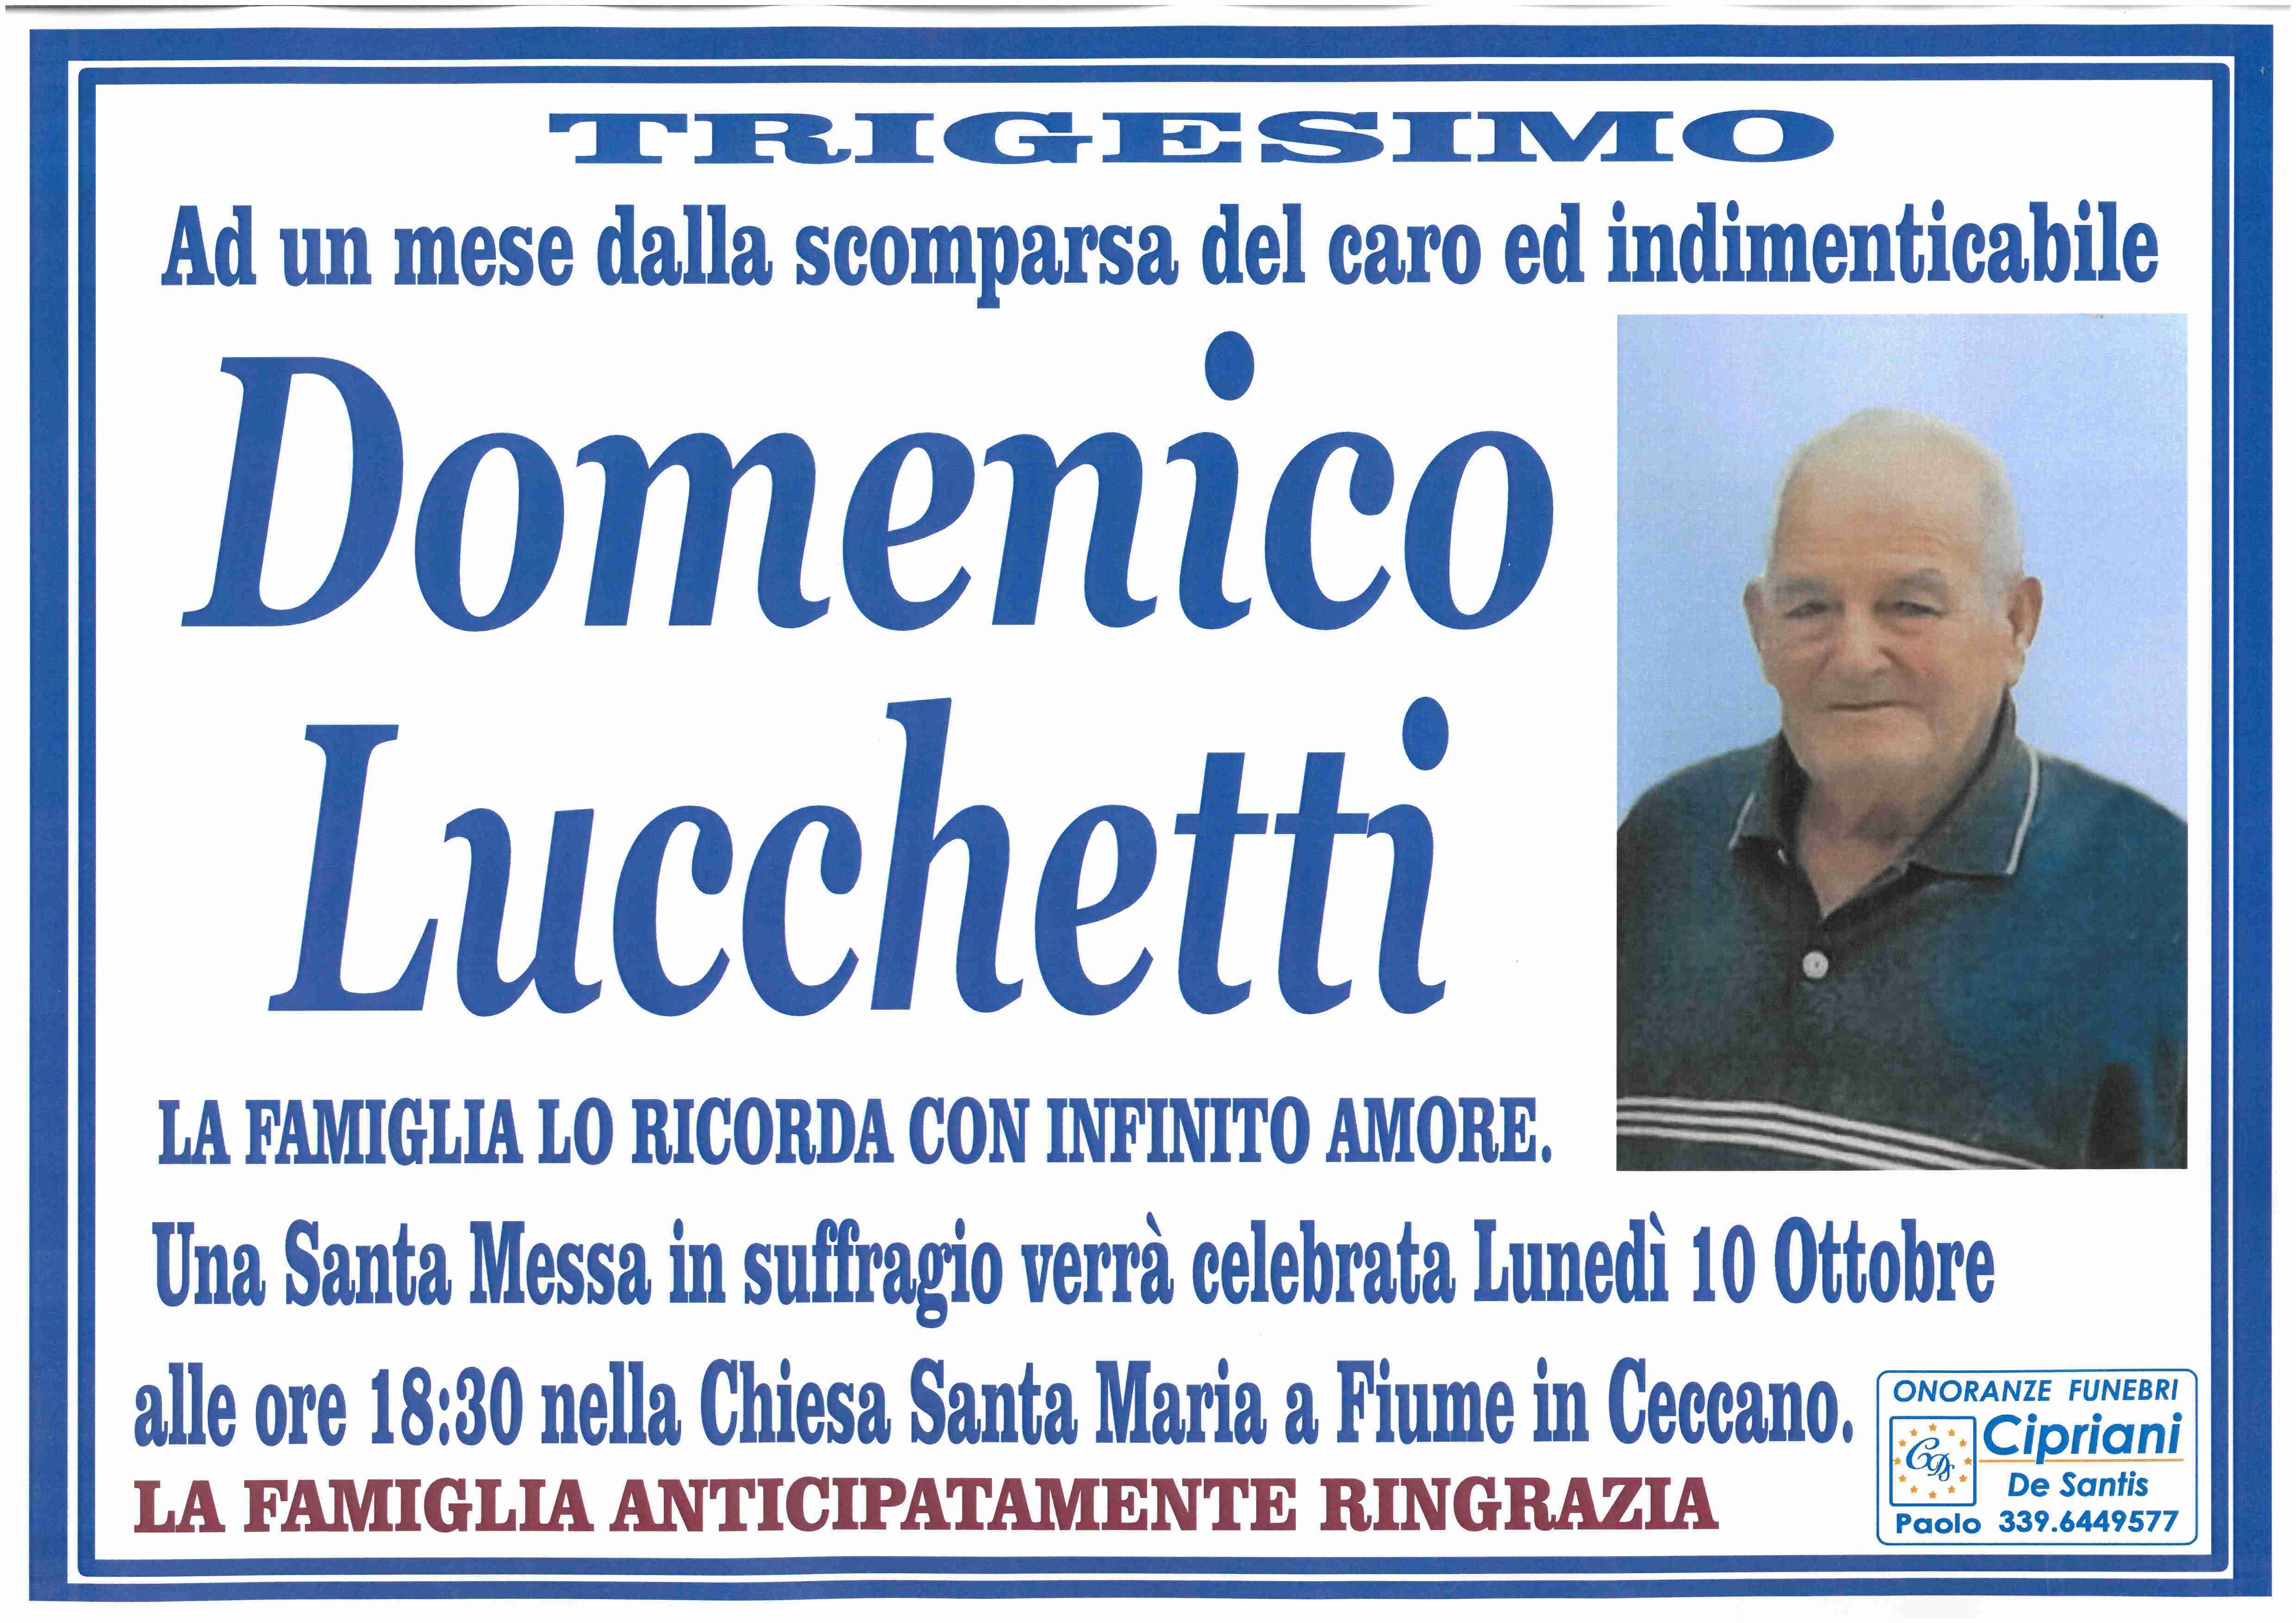 Domenico Lucchetti